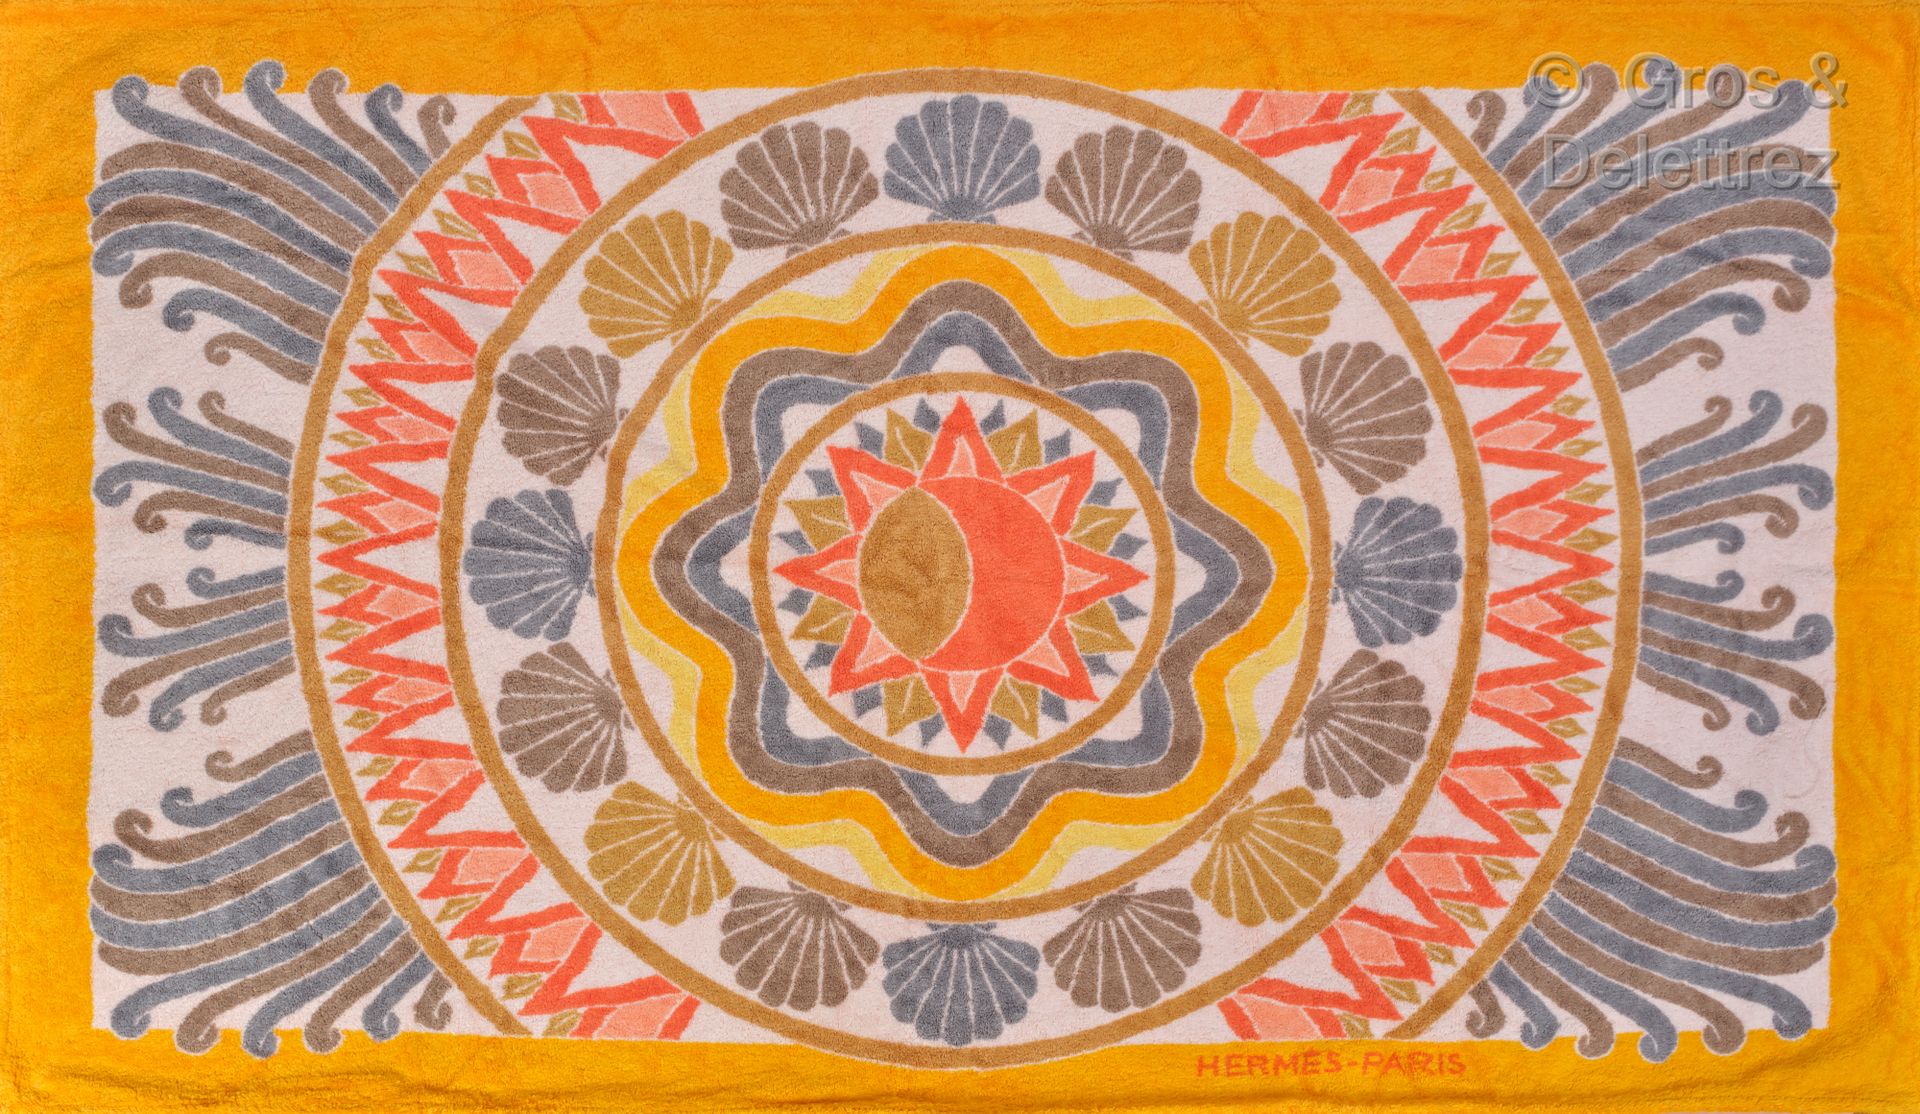 HERMES Paris 毛圈棉沙滩巾，印有太阳图案，周围有橙色和黄色调的贝壳。状况良好。